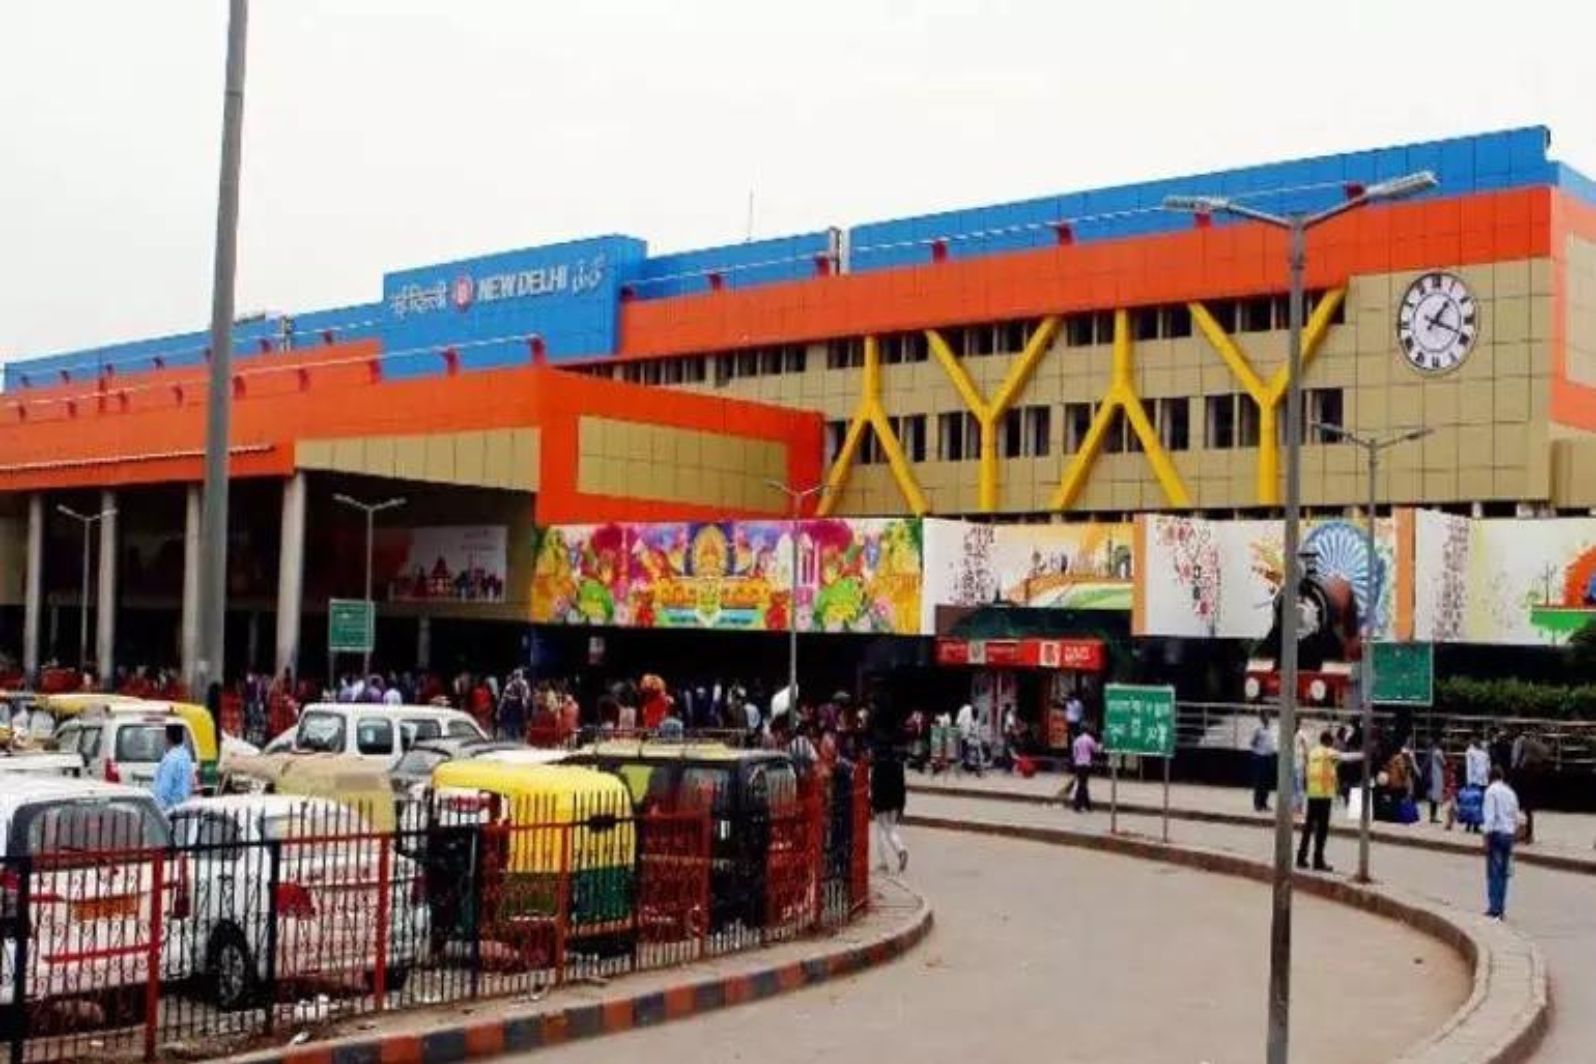 new delhi railway station gate no 1